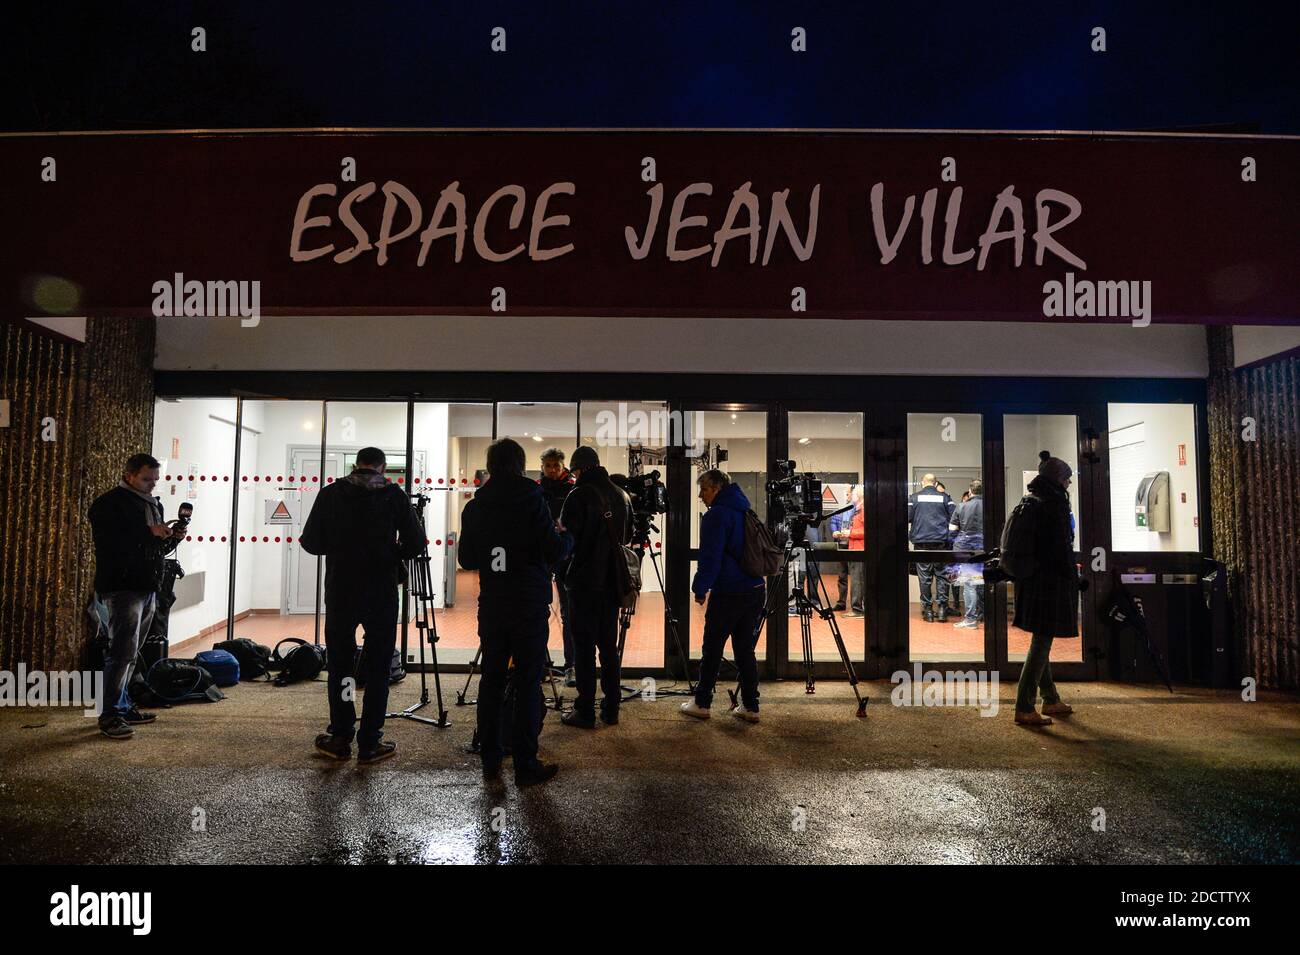 Un morto e 4 feriti, incluso un bambino di 8 anni, durante un incidente di giostra in una fiera a Neuville sur Saone, vicino a Lione, Francia, il 31 marzo 2018. Foto di Julien Reynaud/APS-Medias/ABACAPRESS.COM Foto Stock